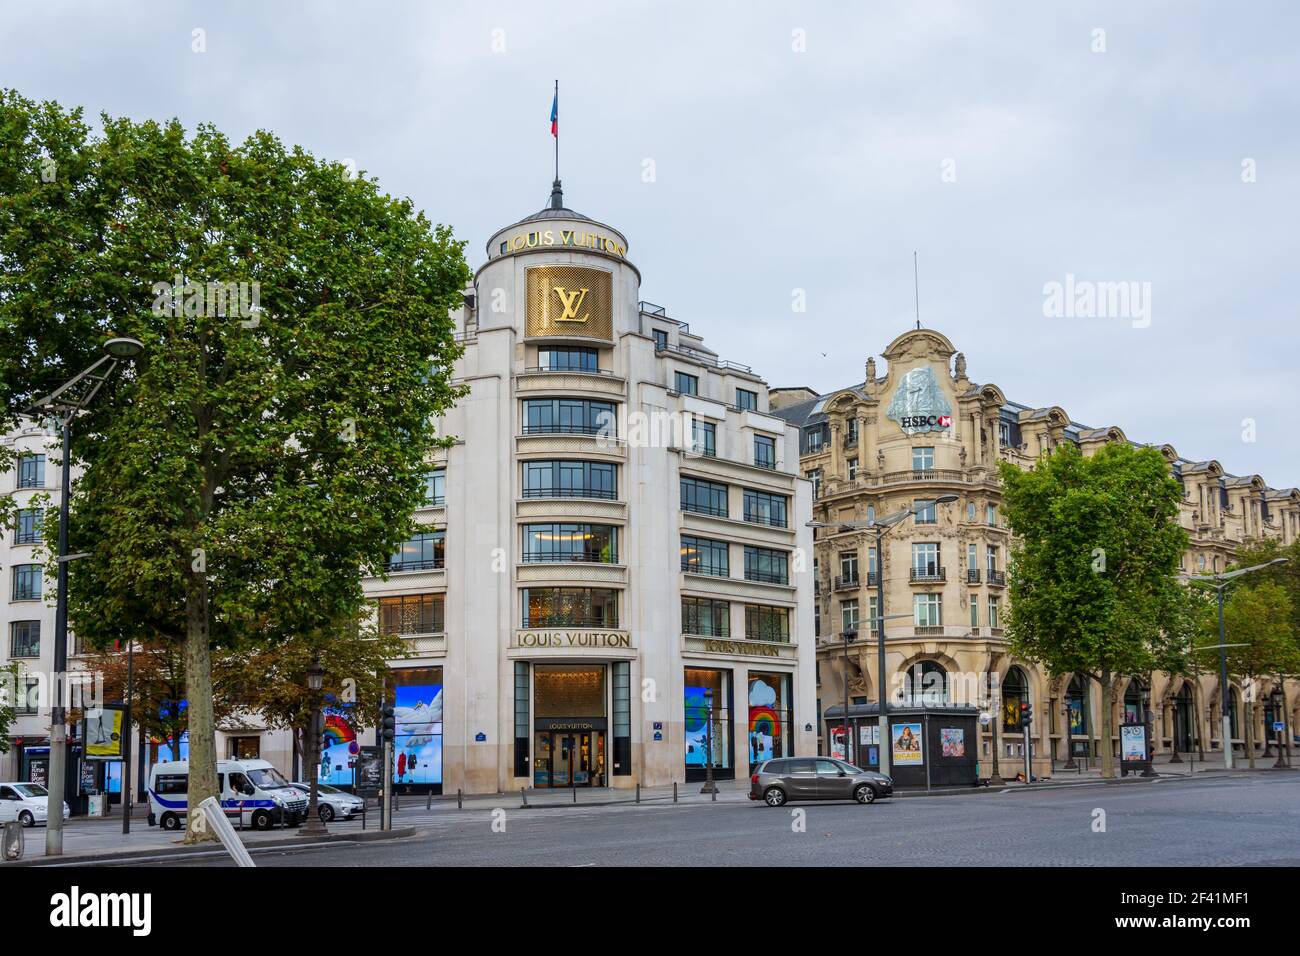 Louis Vuitton building on the avenue des Champs-Elysees, Paris, France Stock Photo